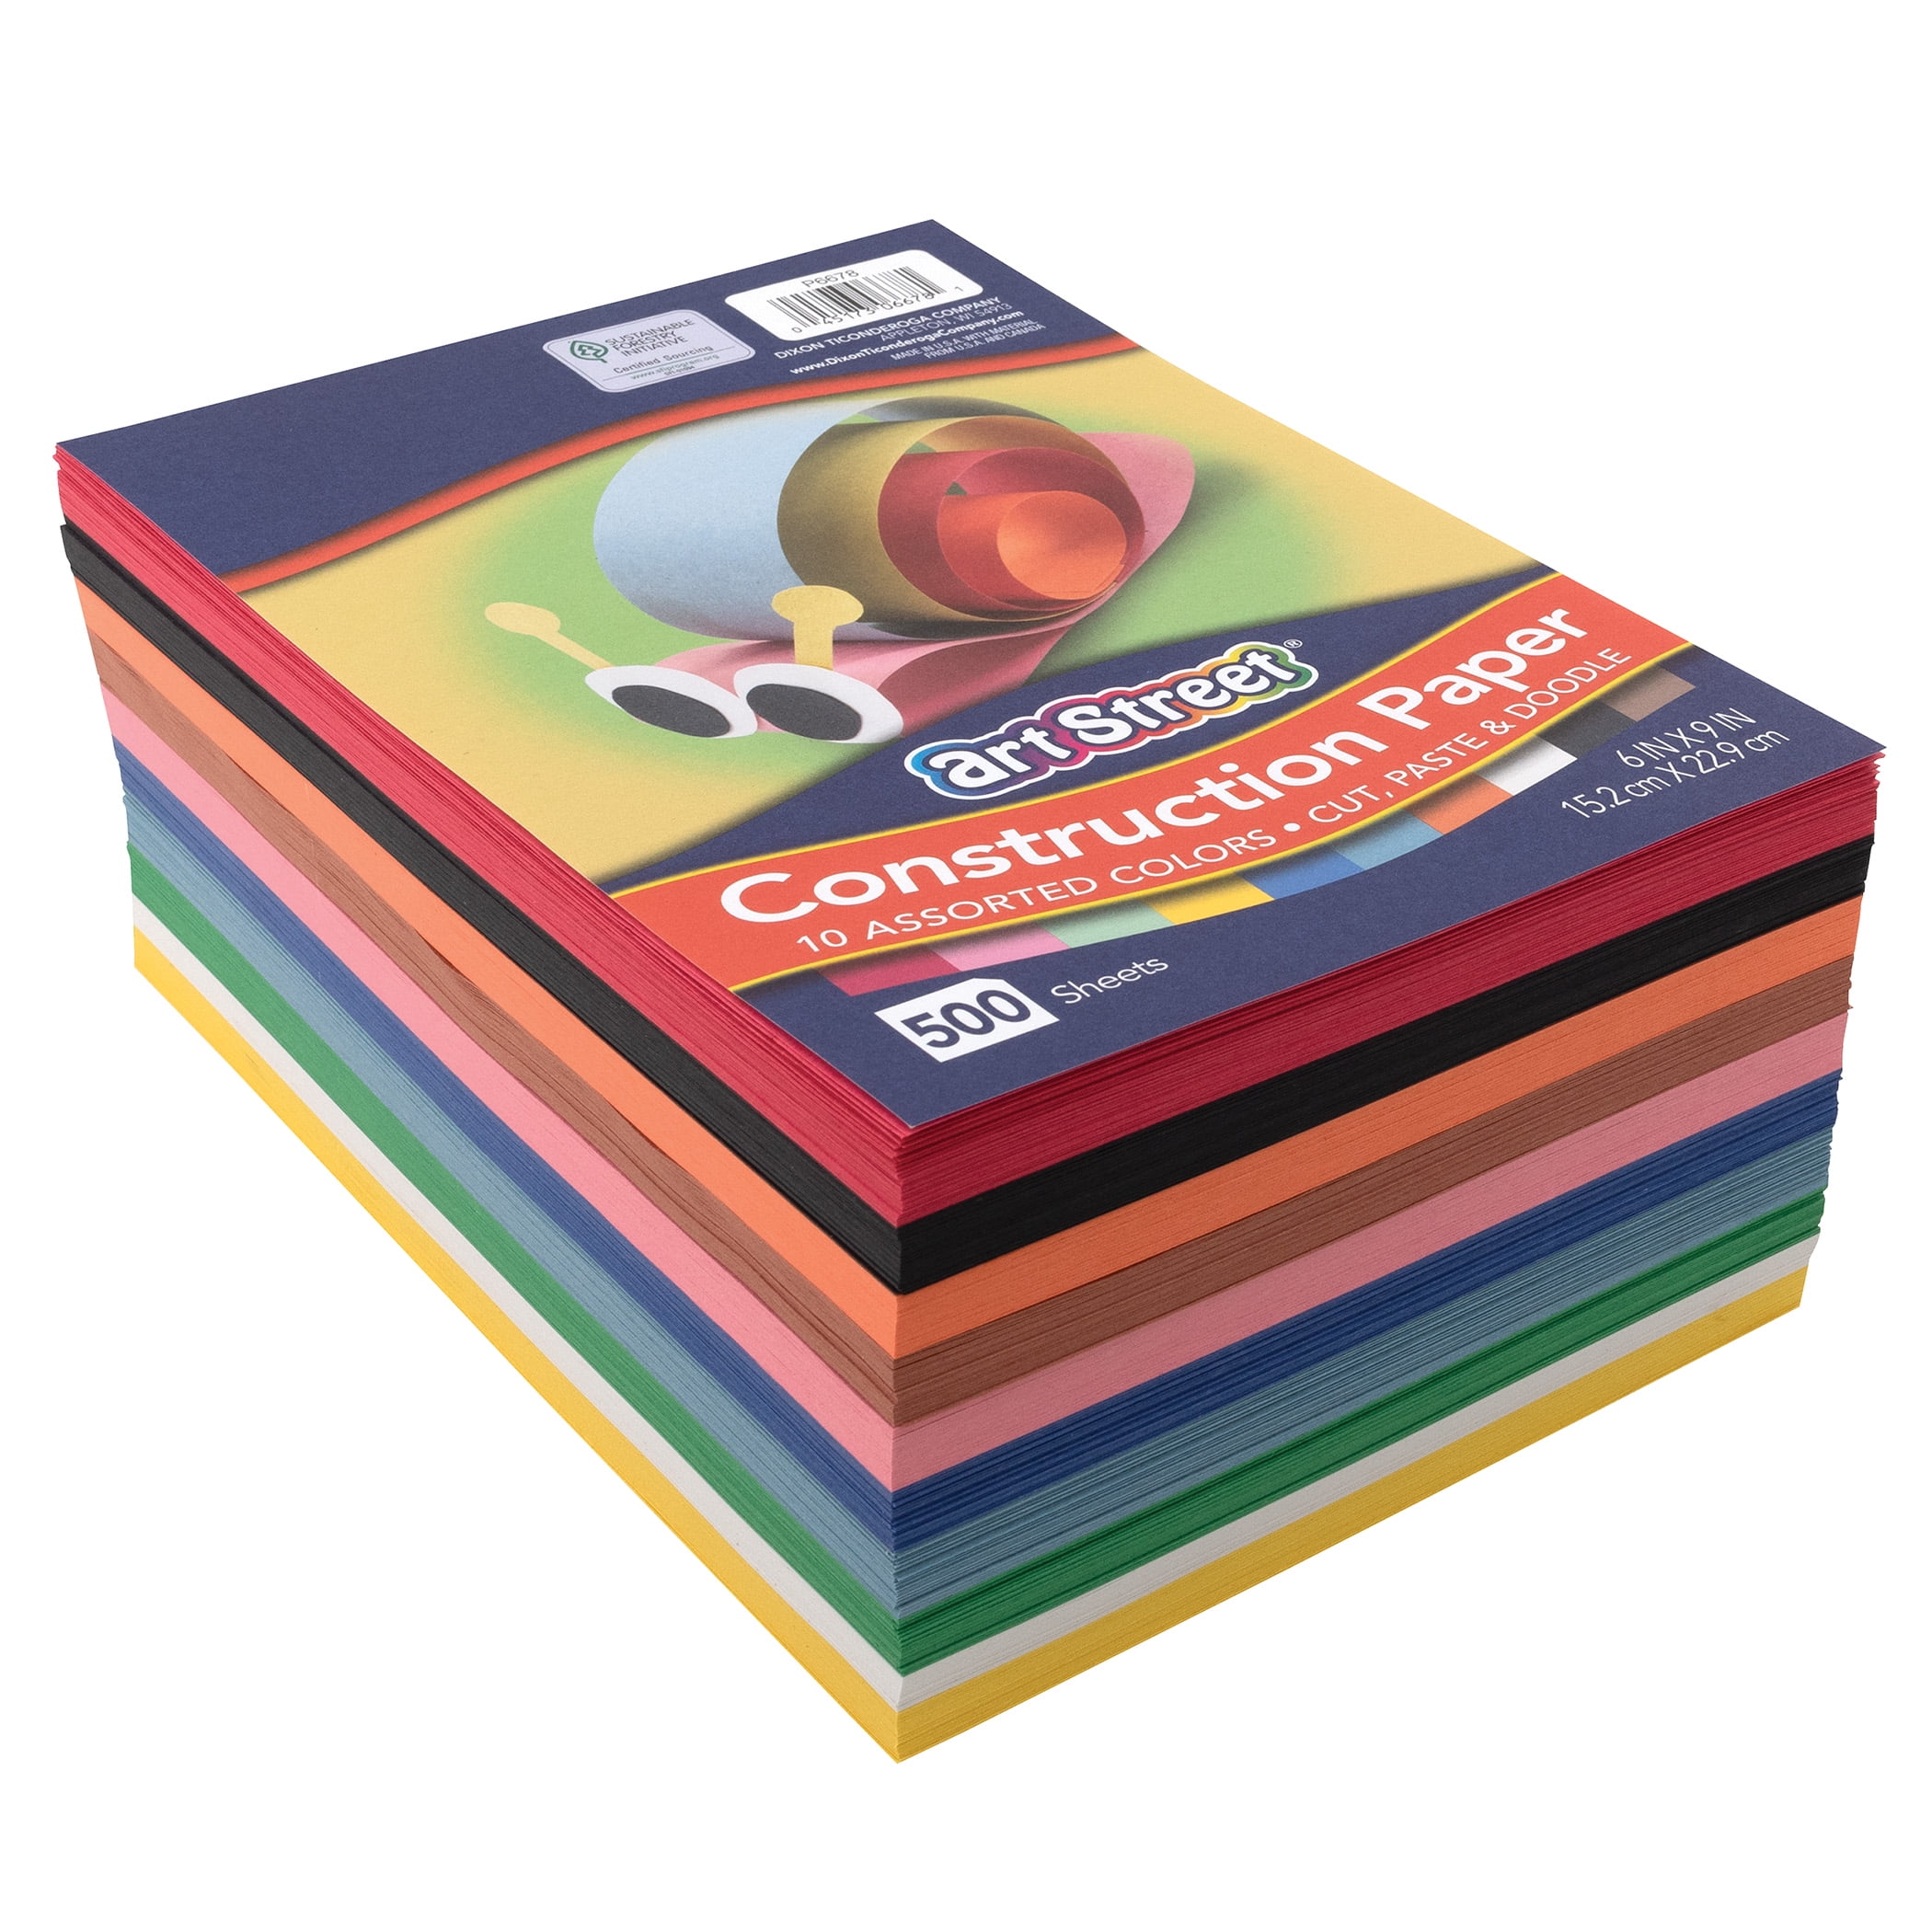 Caliber Construction Paper, Assorted Colors - 40 ct | CVS